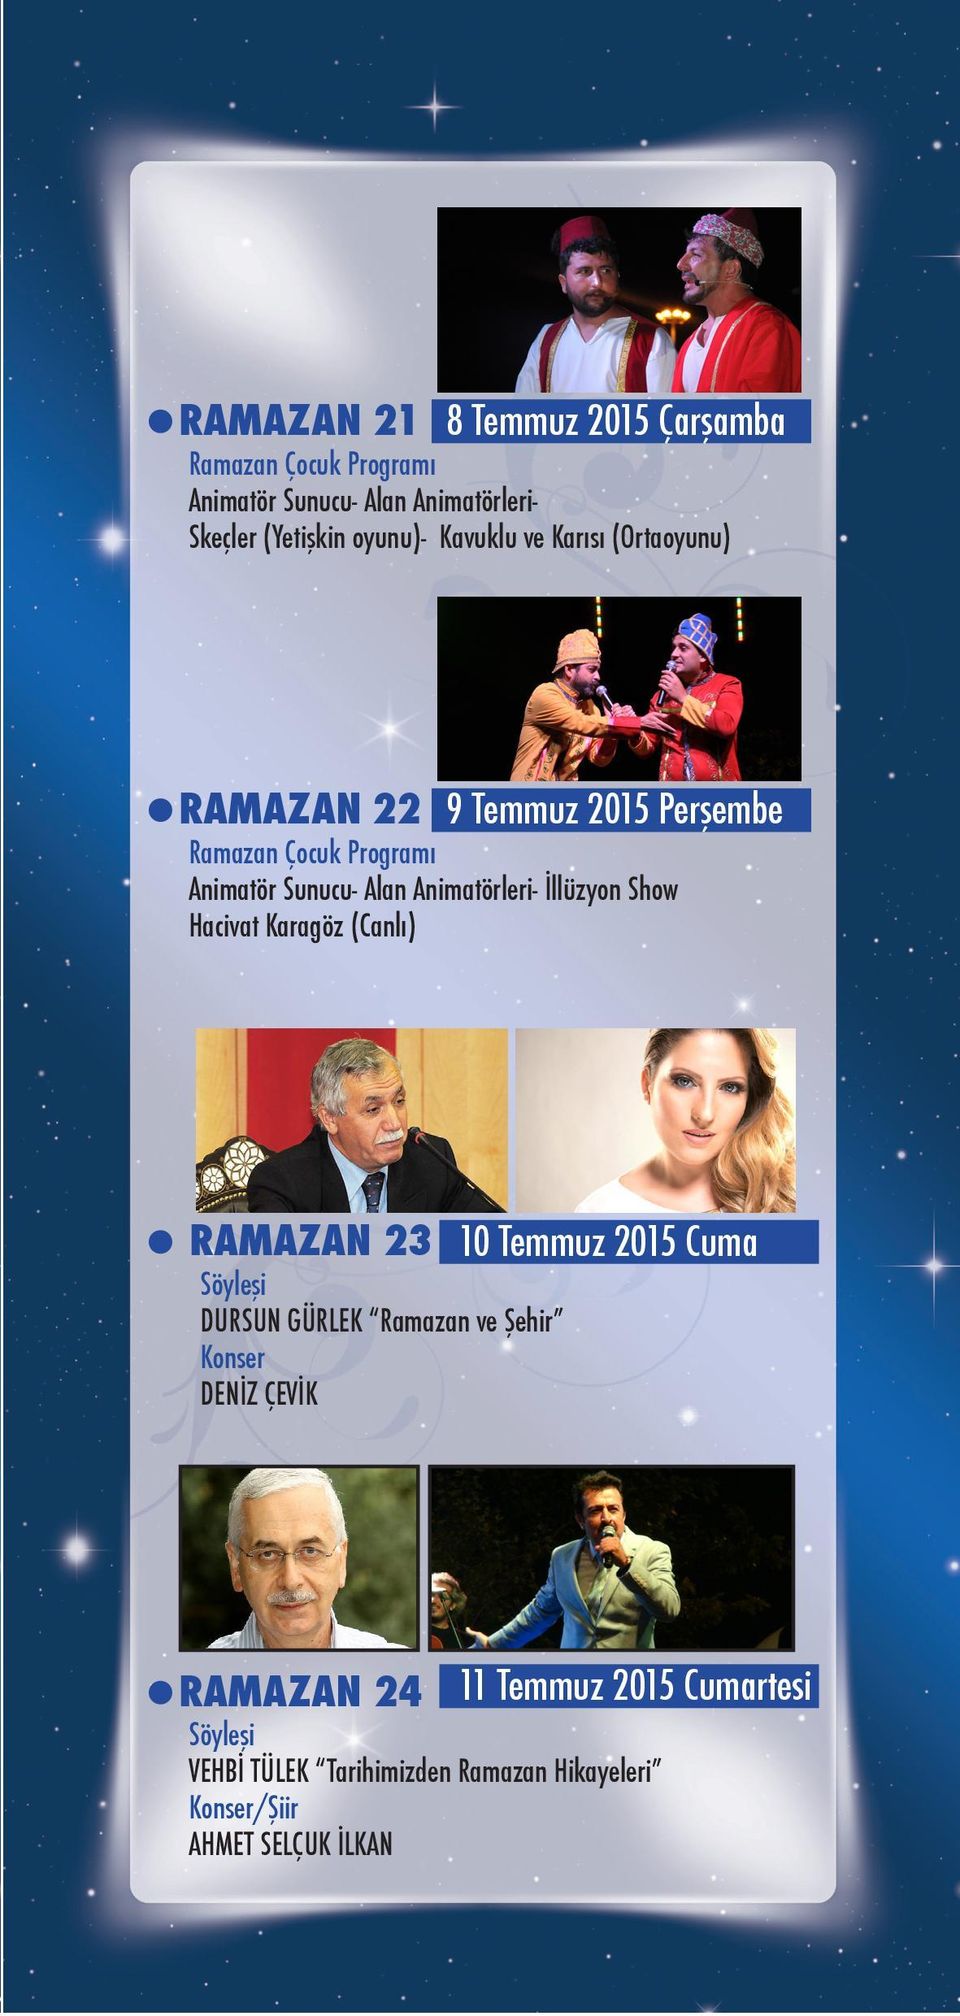 Karagöz (Canlı) RAMAZAN 23 Söyleşi DURSUN GÜRLEK Ramazan ve Şehir Konser DENİZ ÇEVİK 10 Temmuz 2015 Cuma